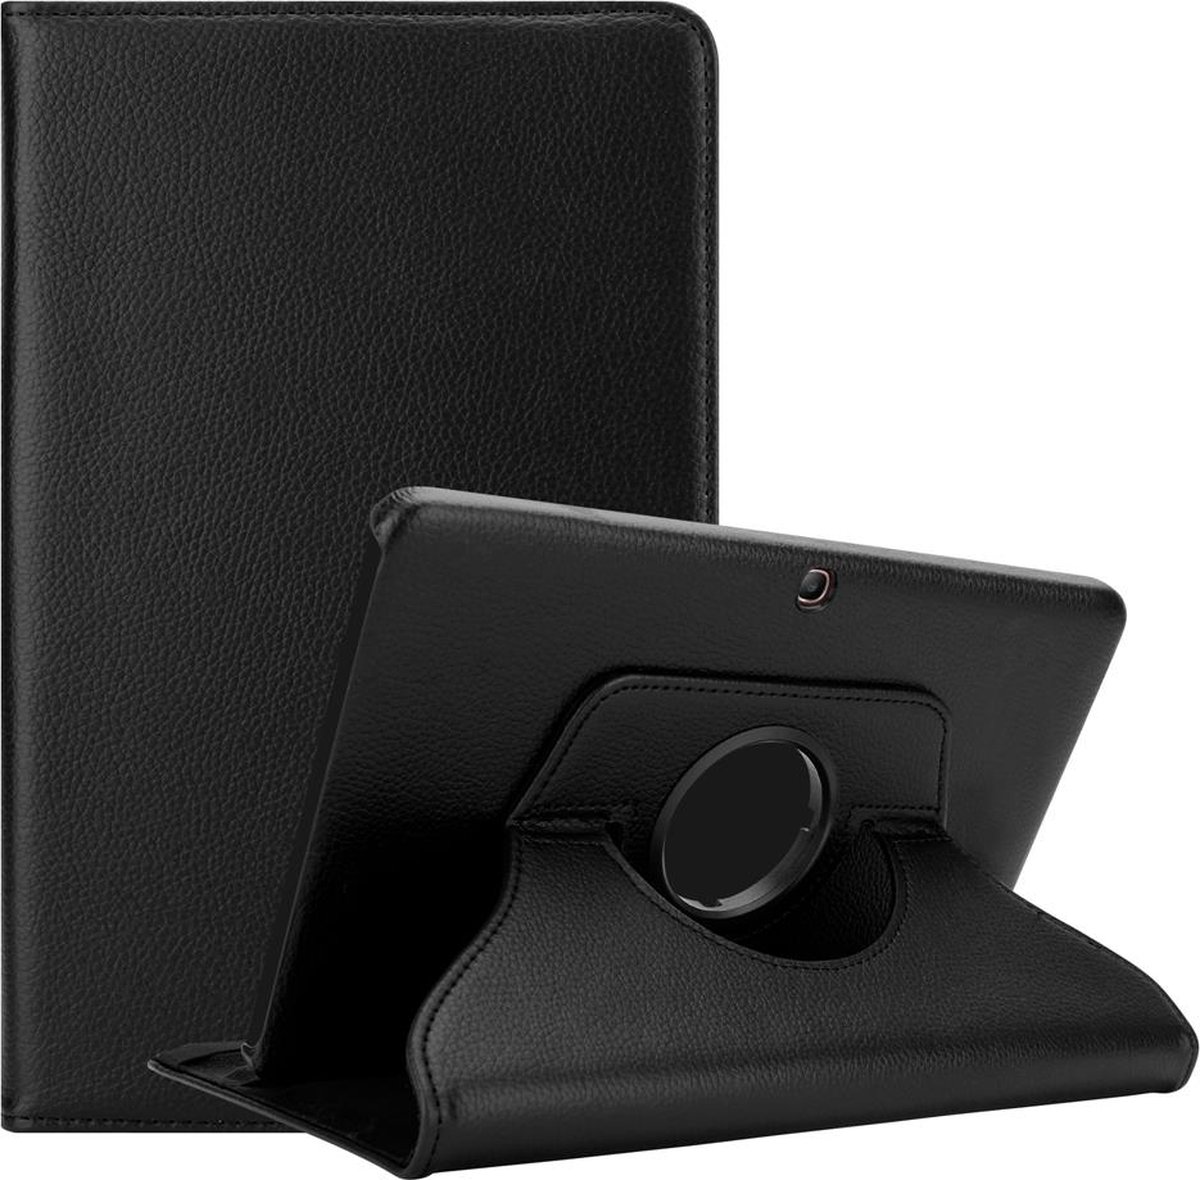 Cadorabo Tablet Hoesje voor Samsung Galaxy Tab 4 (10.1 inch) in OUDERLING ZWART - Beschermhoes ZONDER auto Wake Up, met stand functie en elastische band sluiting Book Case Cover Etui